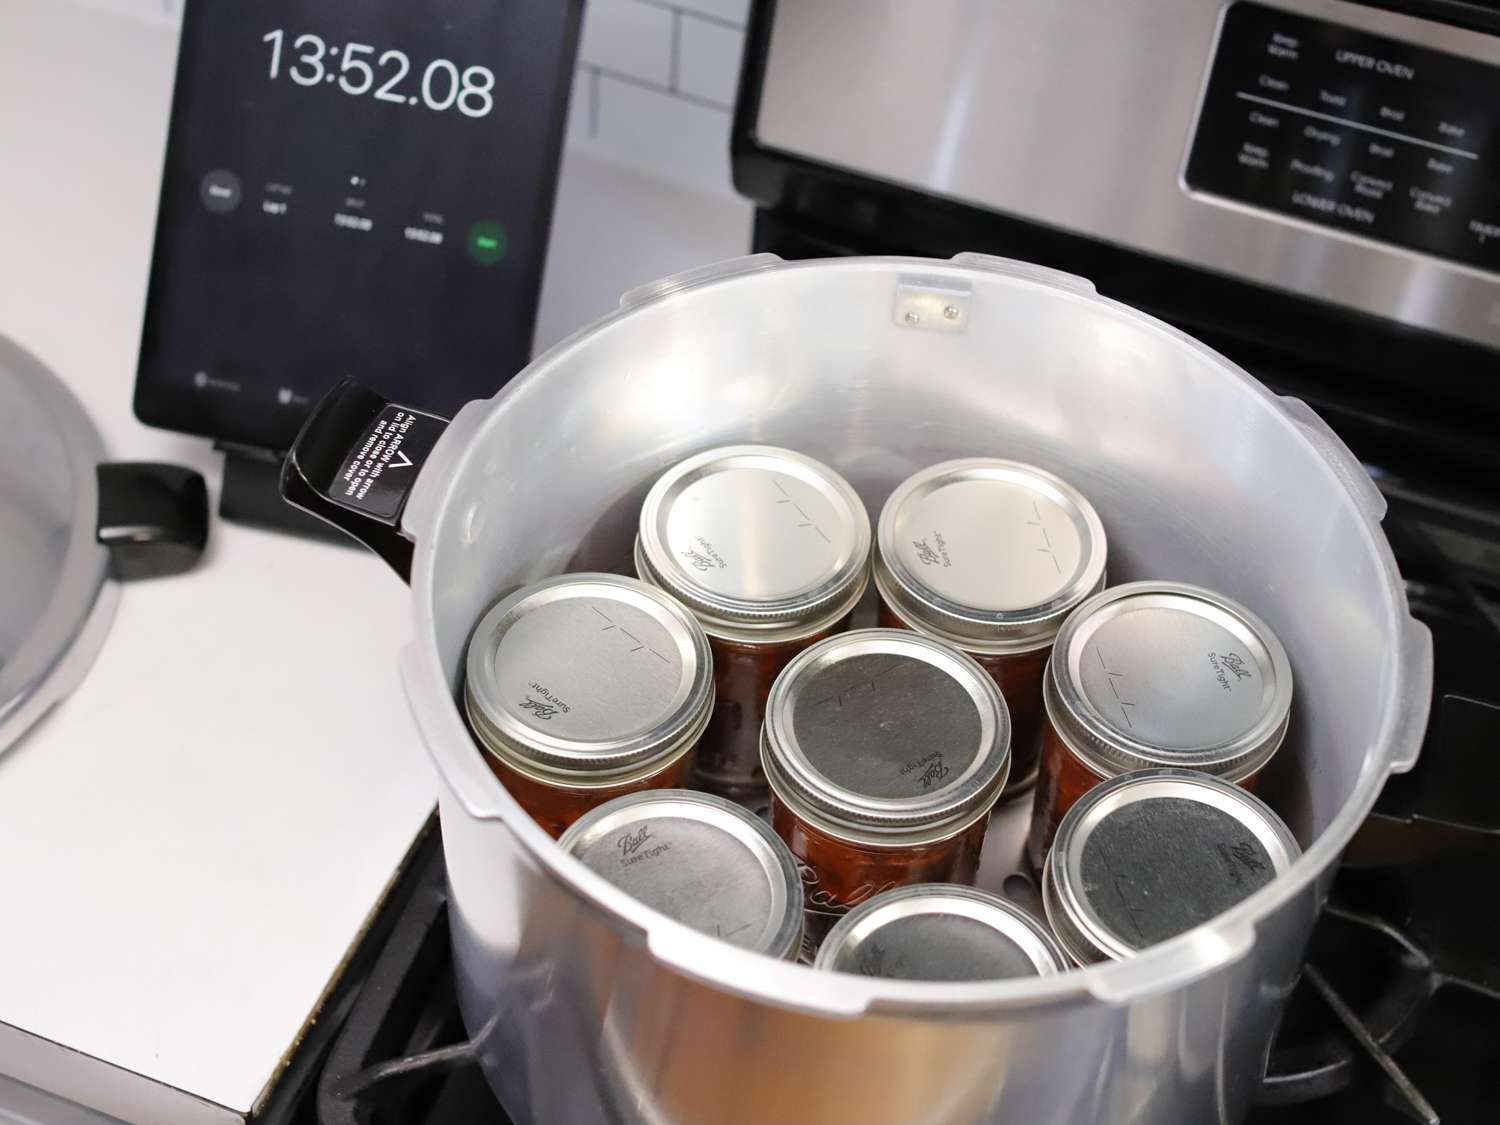 炉灶上的压力罐里装着番茄酱罐